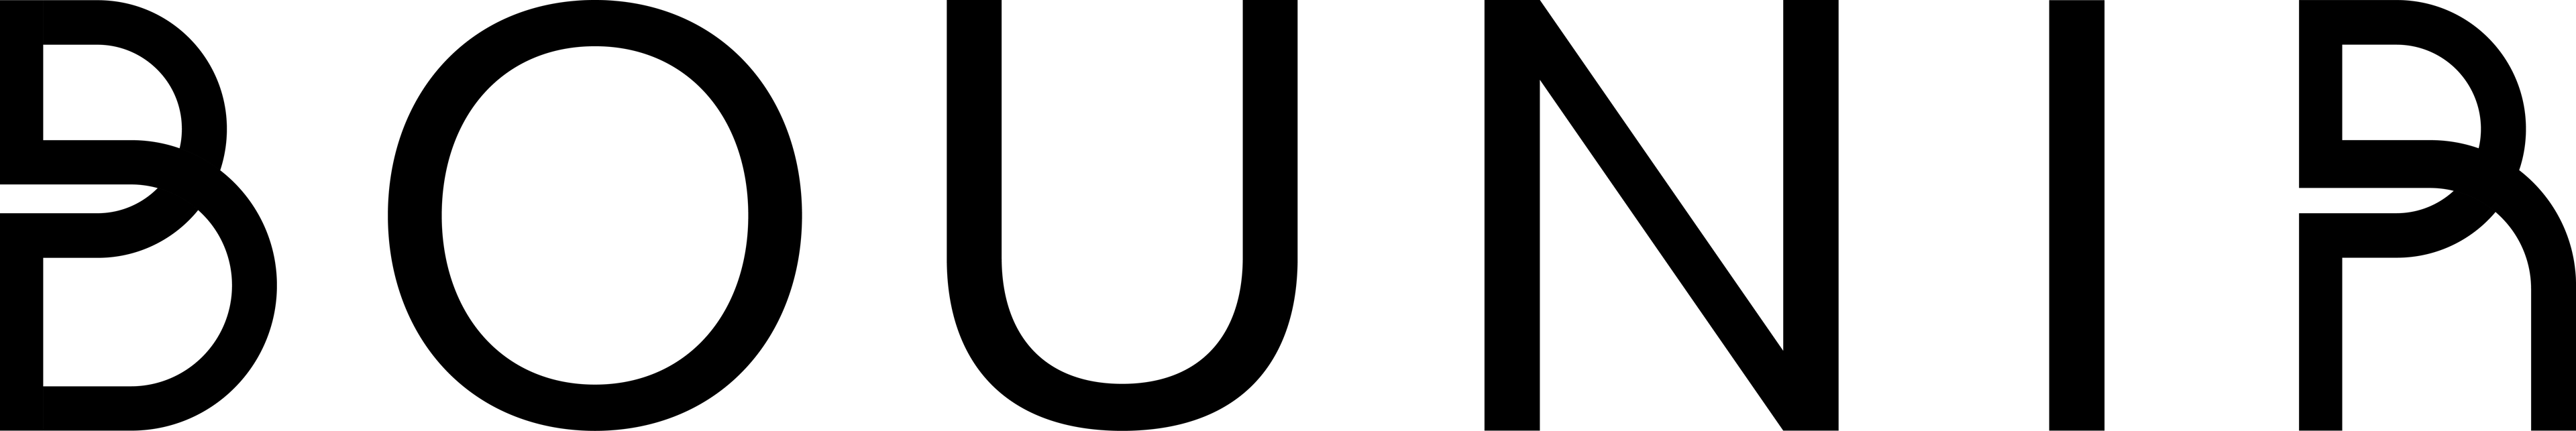 Bounir Support logo